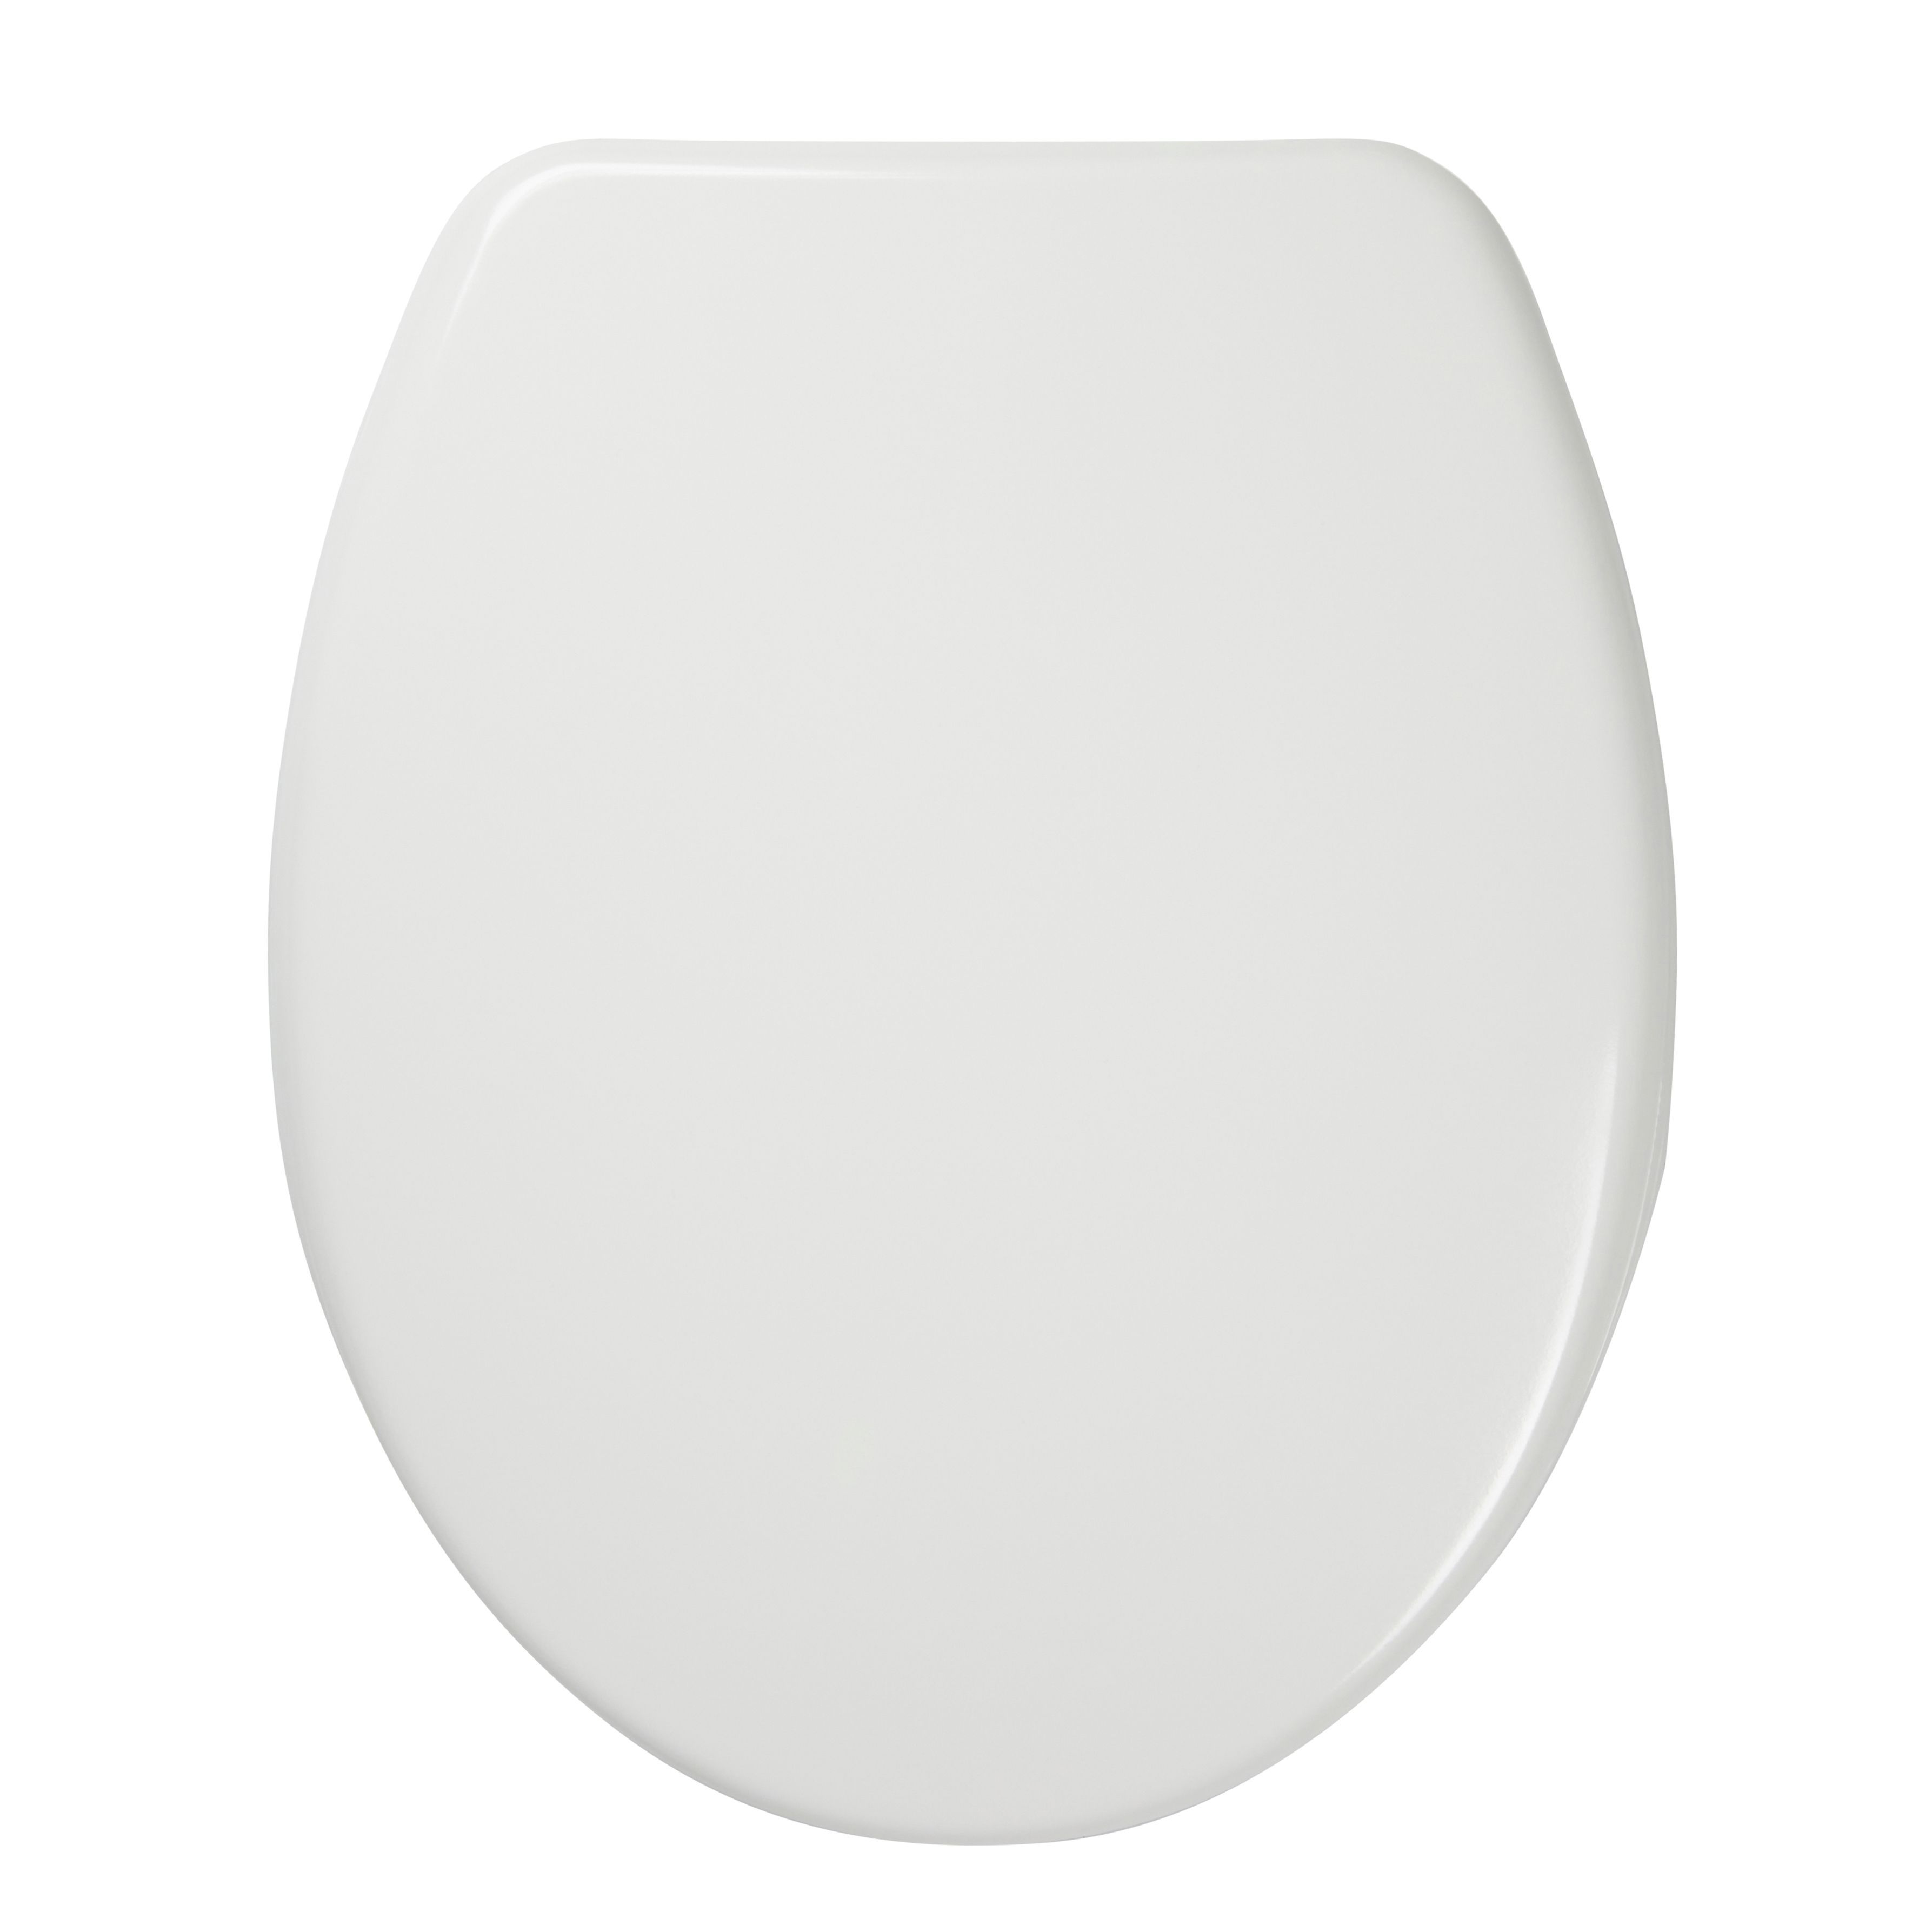 Cooke & Lewis Bakau White Standard close Toilet seat | DIY at B&Q